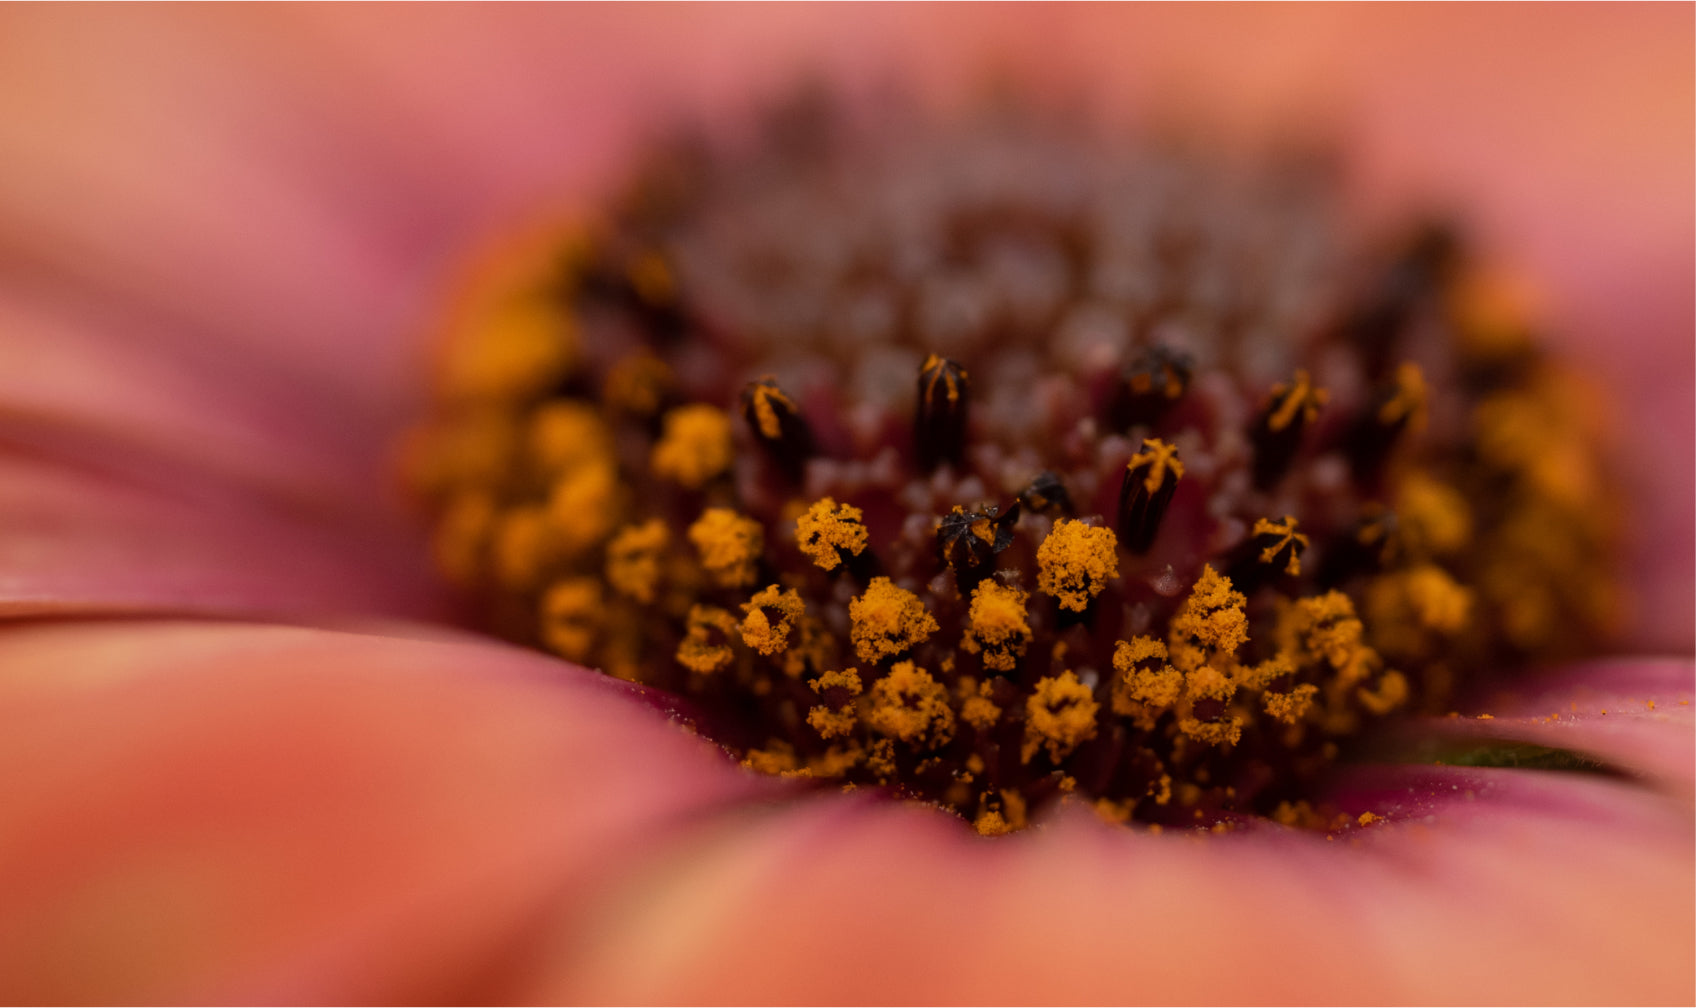 Flower Pollen